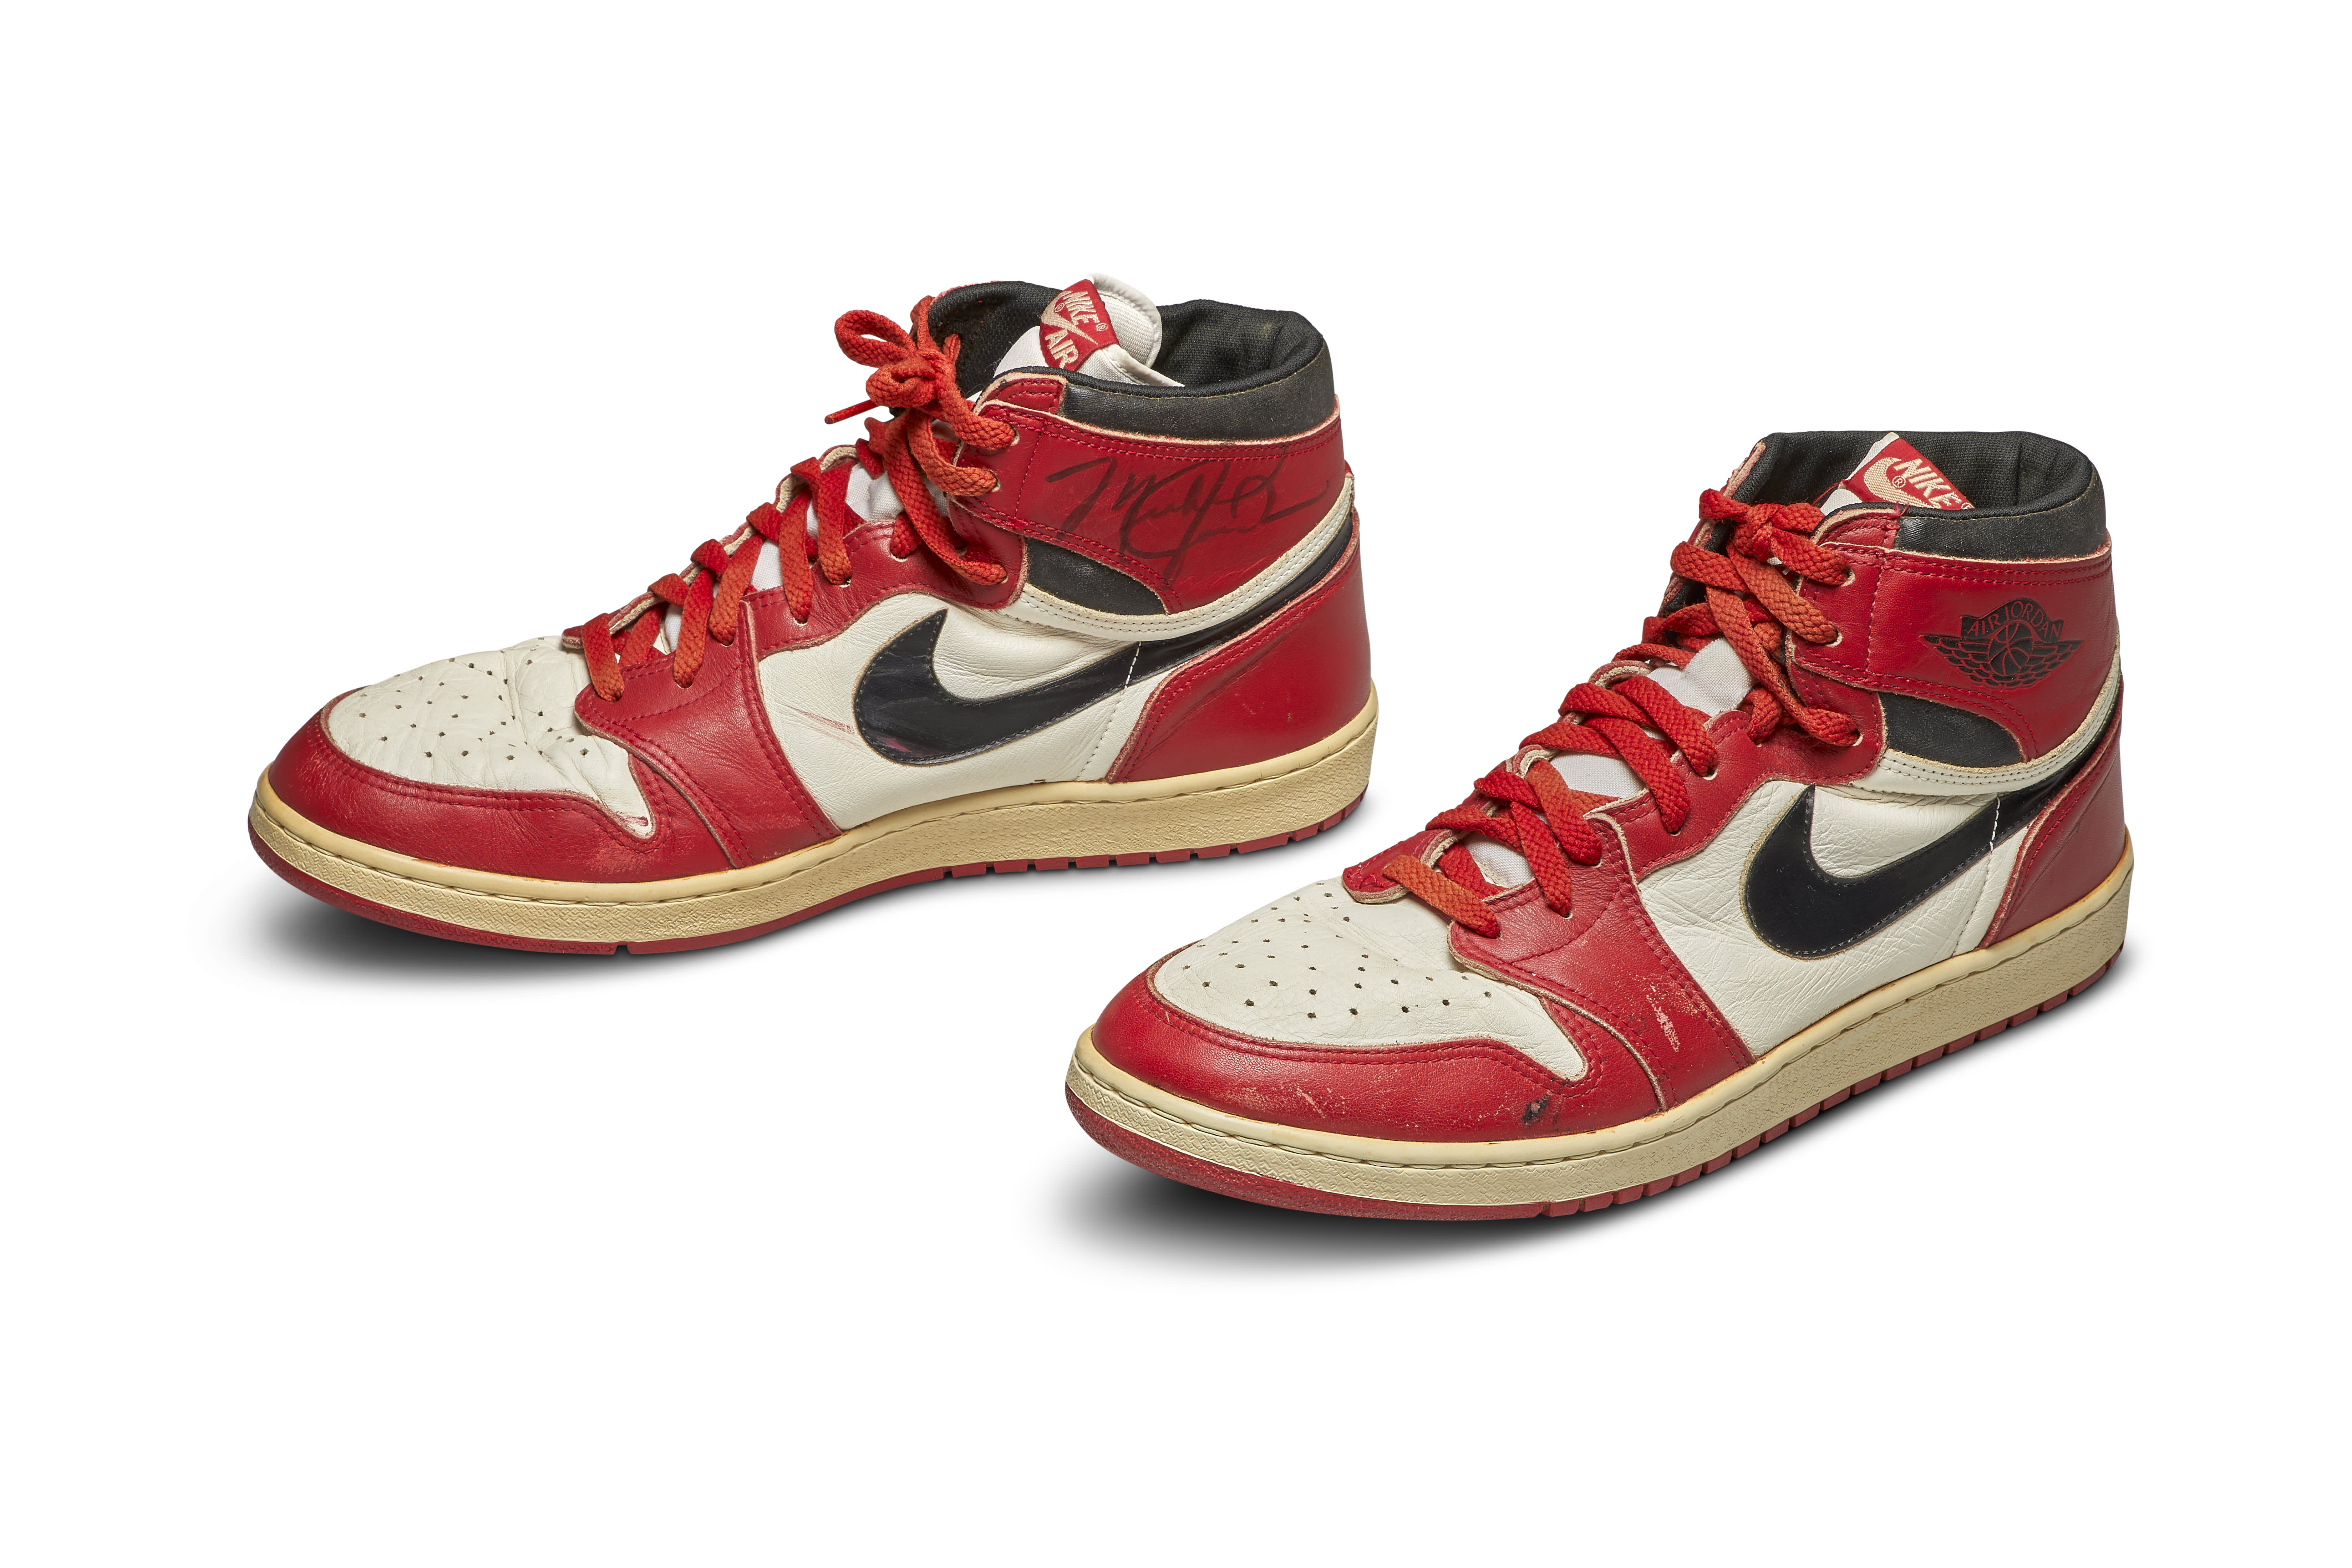 Michael Jordan's Air Jordan 1's sell 